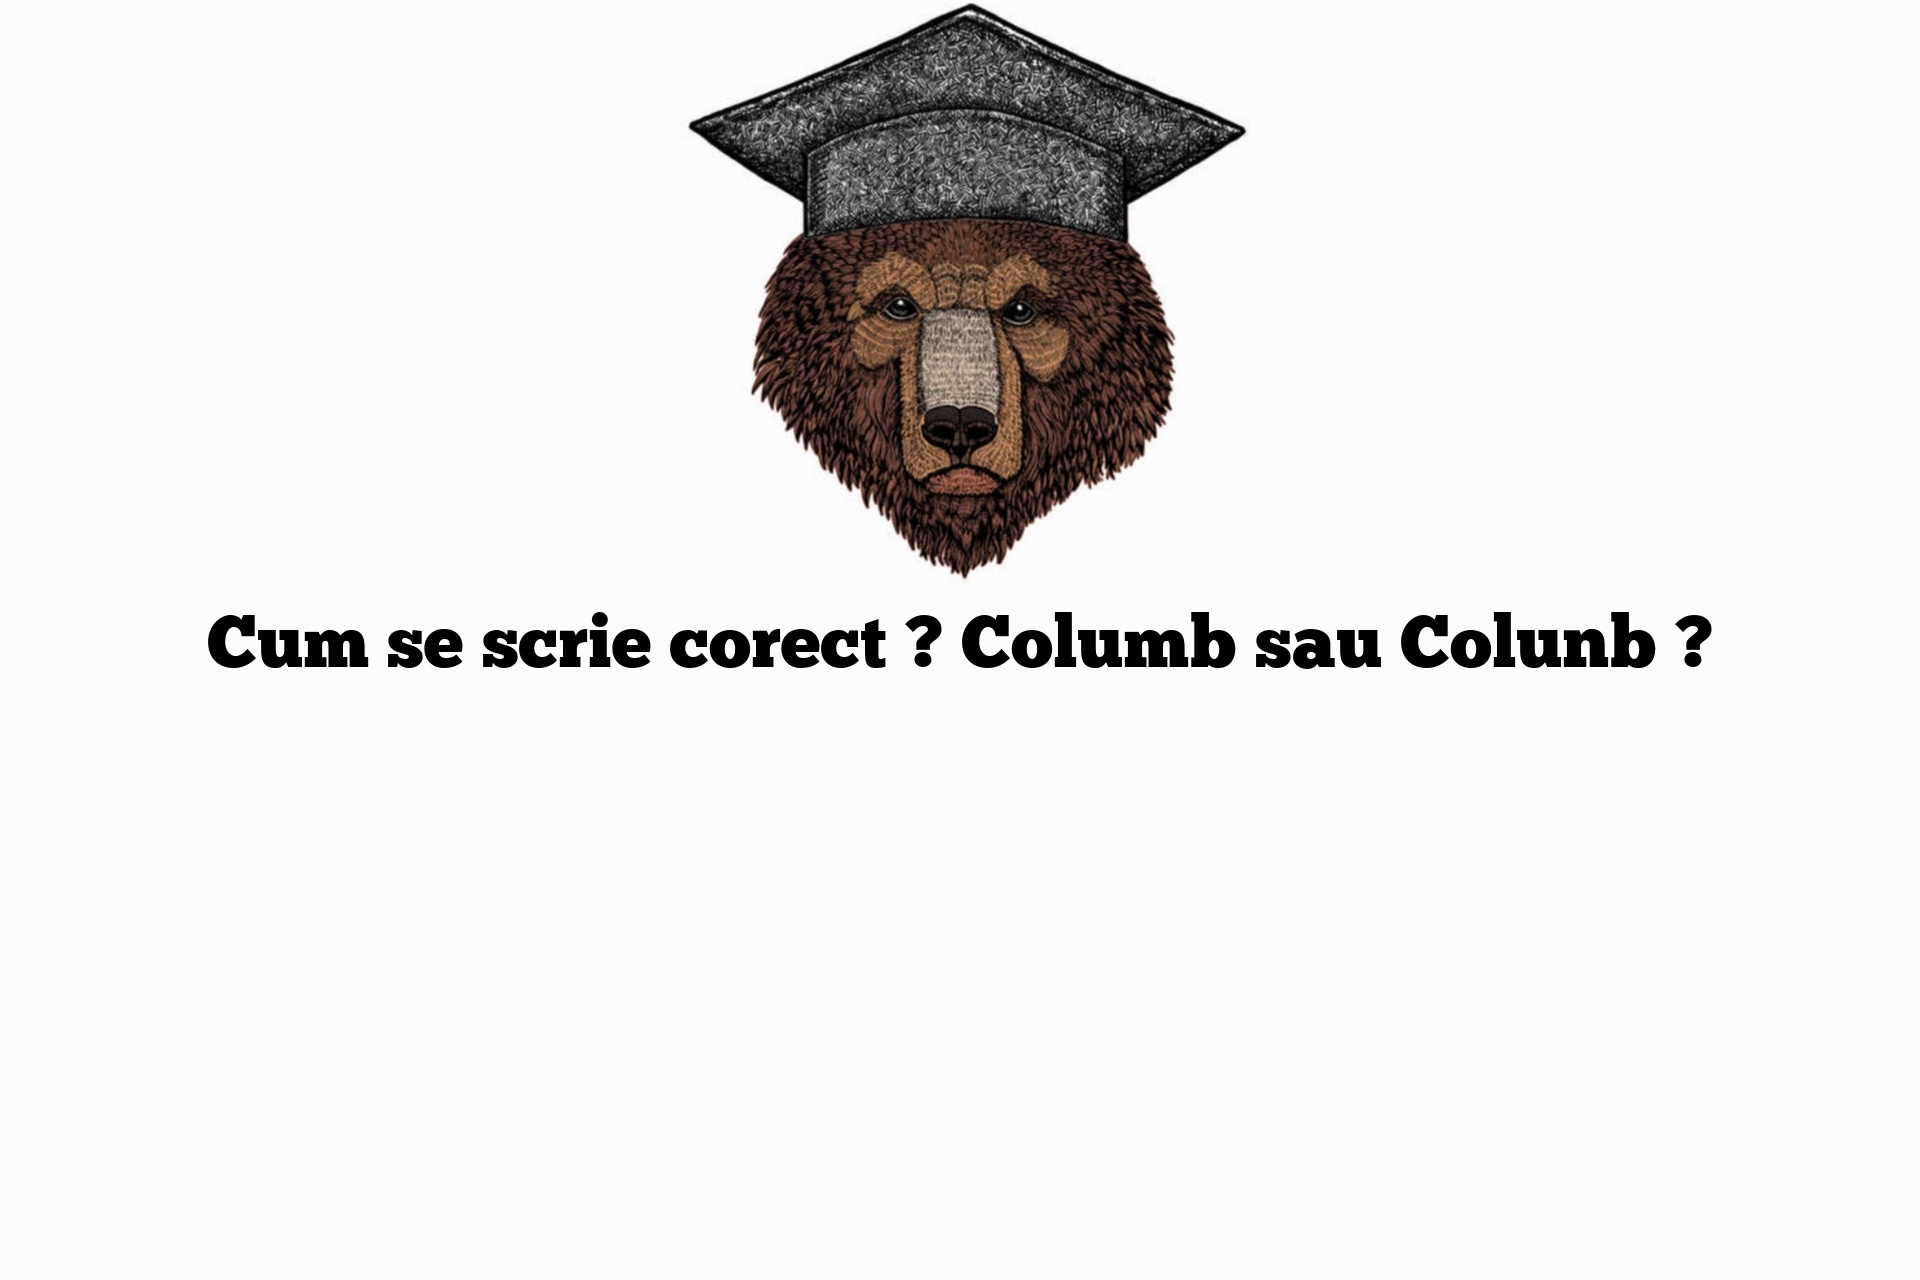 Cum se scrie corect ? Columb sau Colunb ?